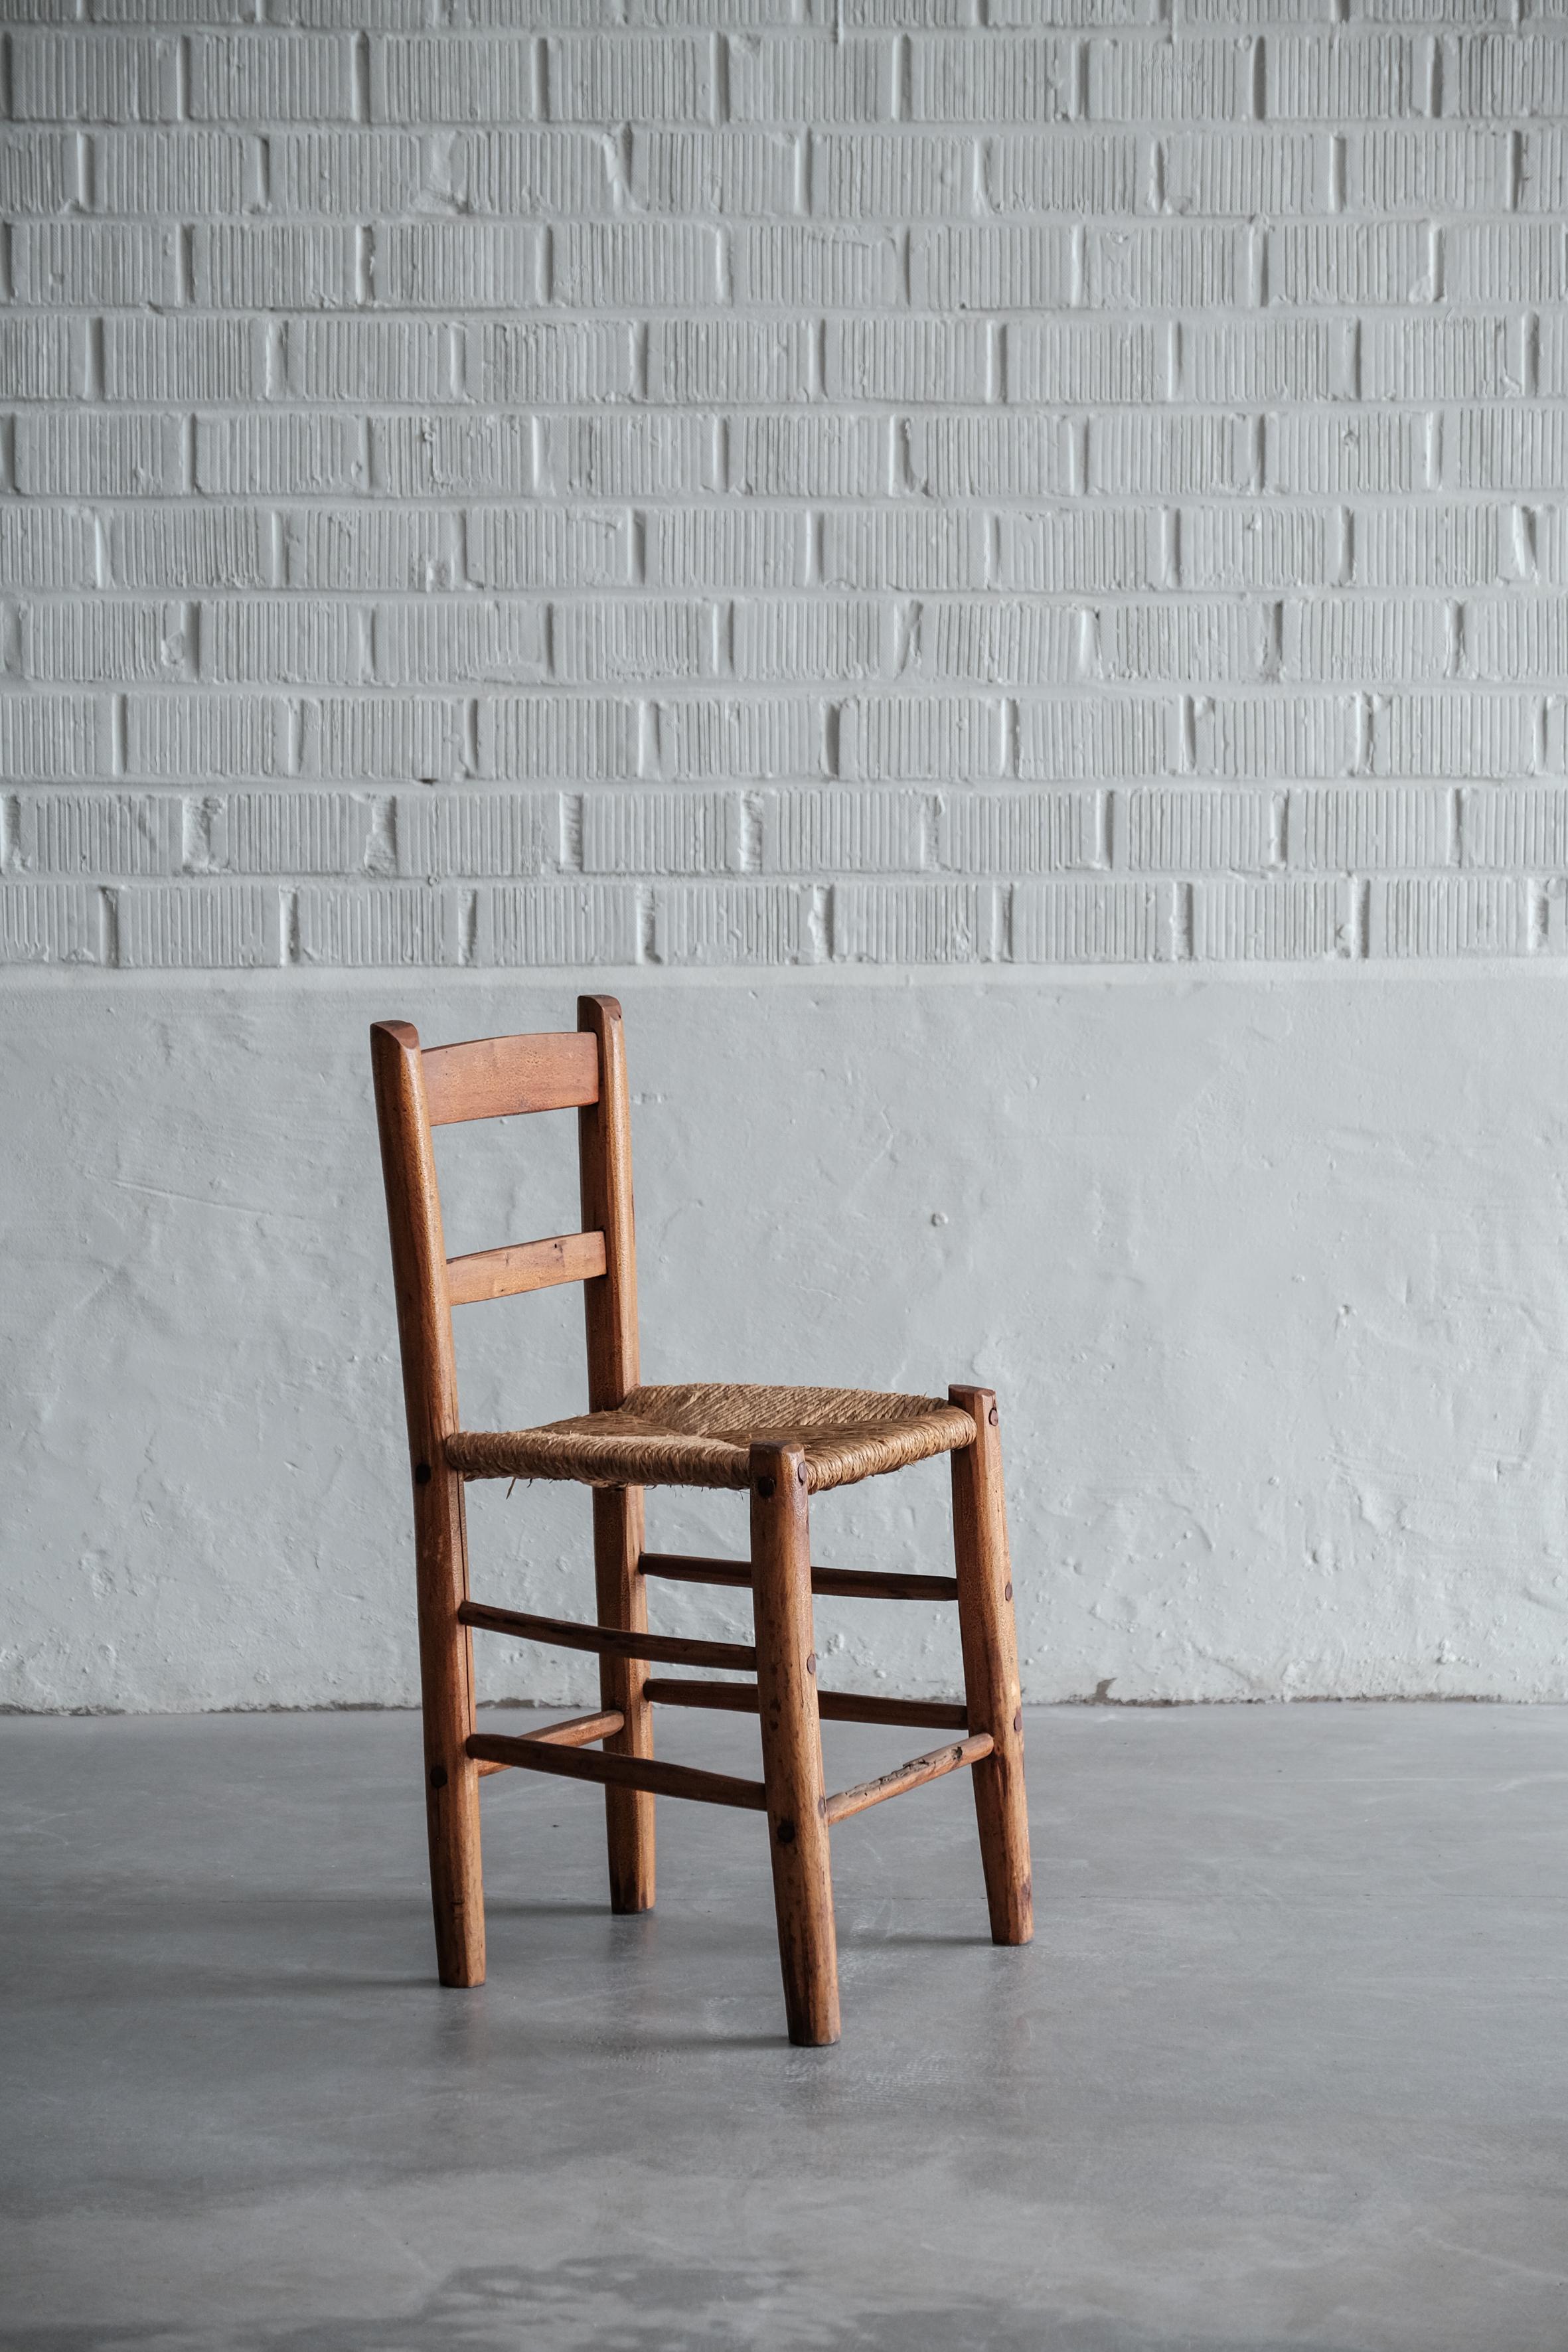 Handgefertigte Stühle aus den französischen Pyrenäen aus Holz und Binsen, siebziger Jahre. 

Jeder Stuhl ist einzigartig. 

Bei einem Stuhl fehlt eine vertikale Holzstange (siehe Bilder 6), keine Stabilitätsprobleme. 